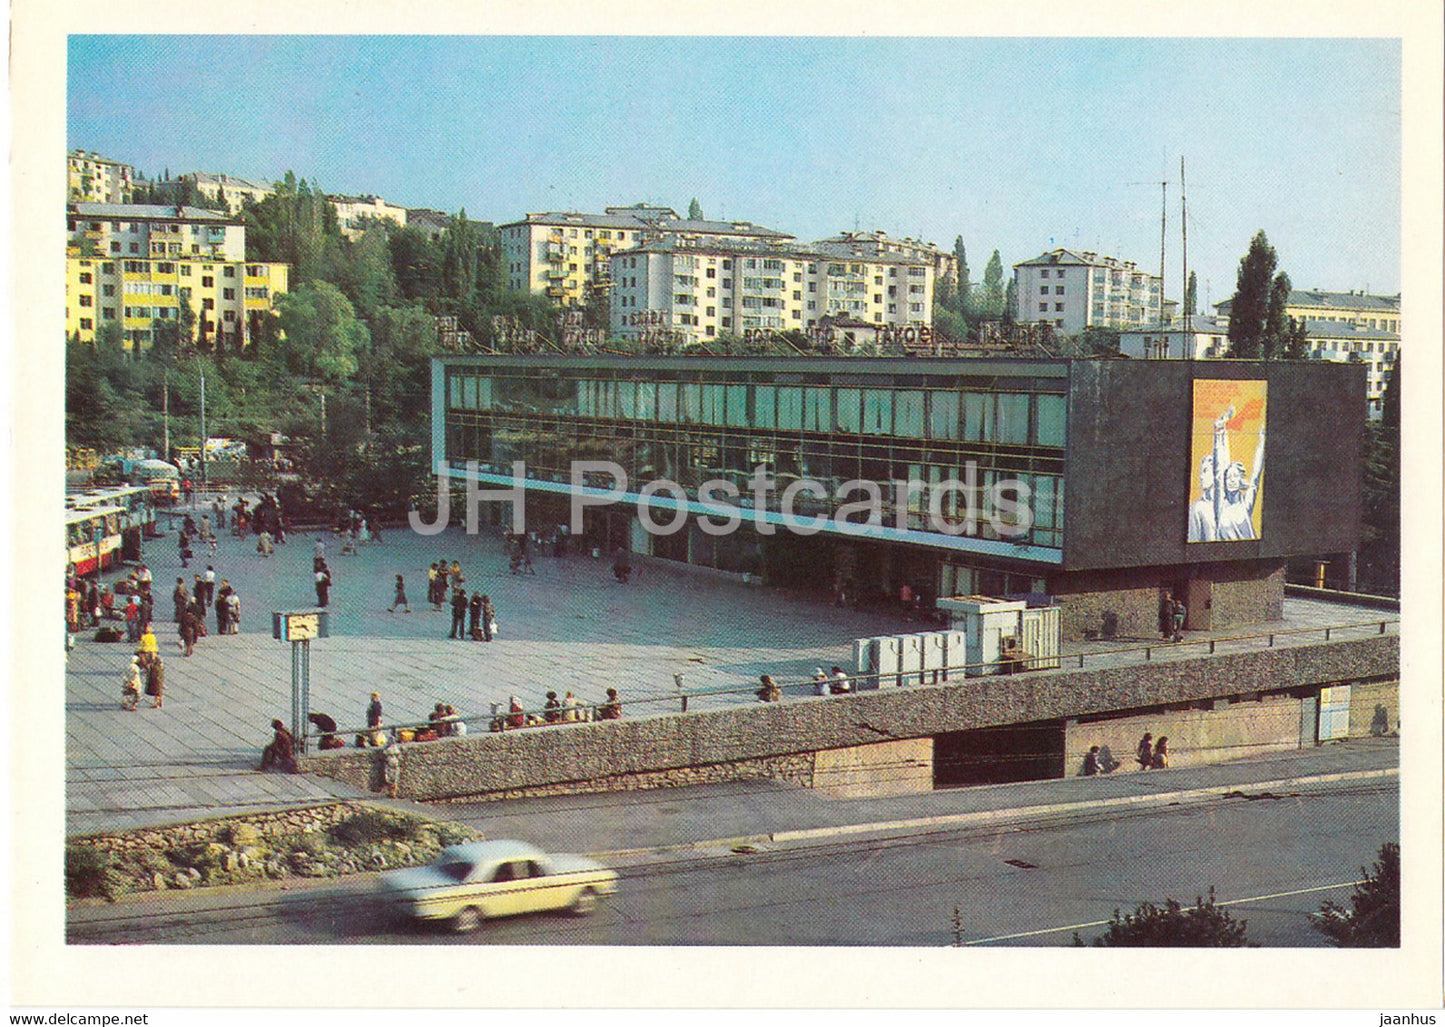 Yalta - Bus station - Crimea - 1981 - Ukraine USSR - unused - JH Postcards